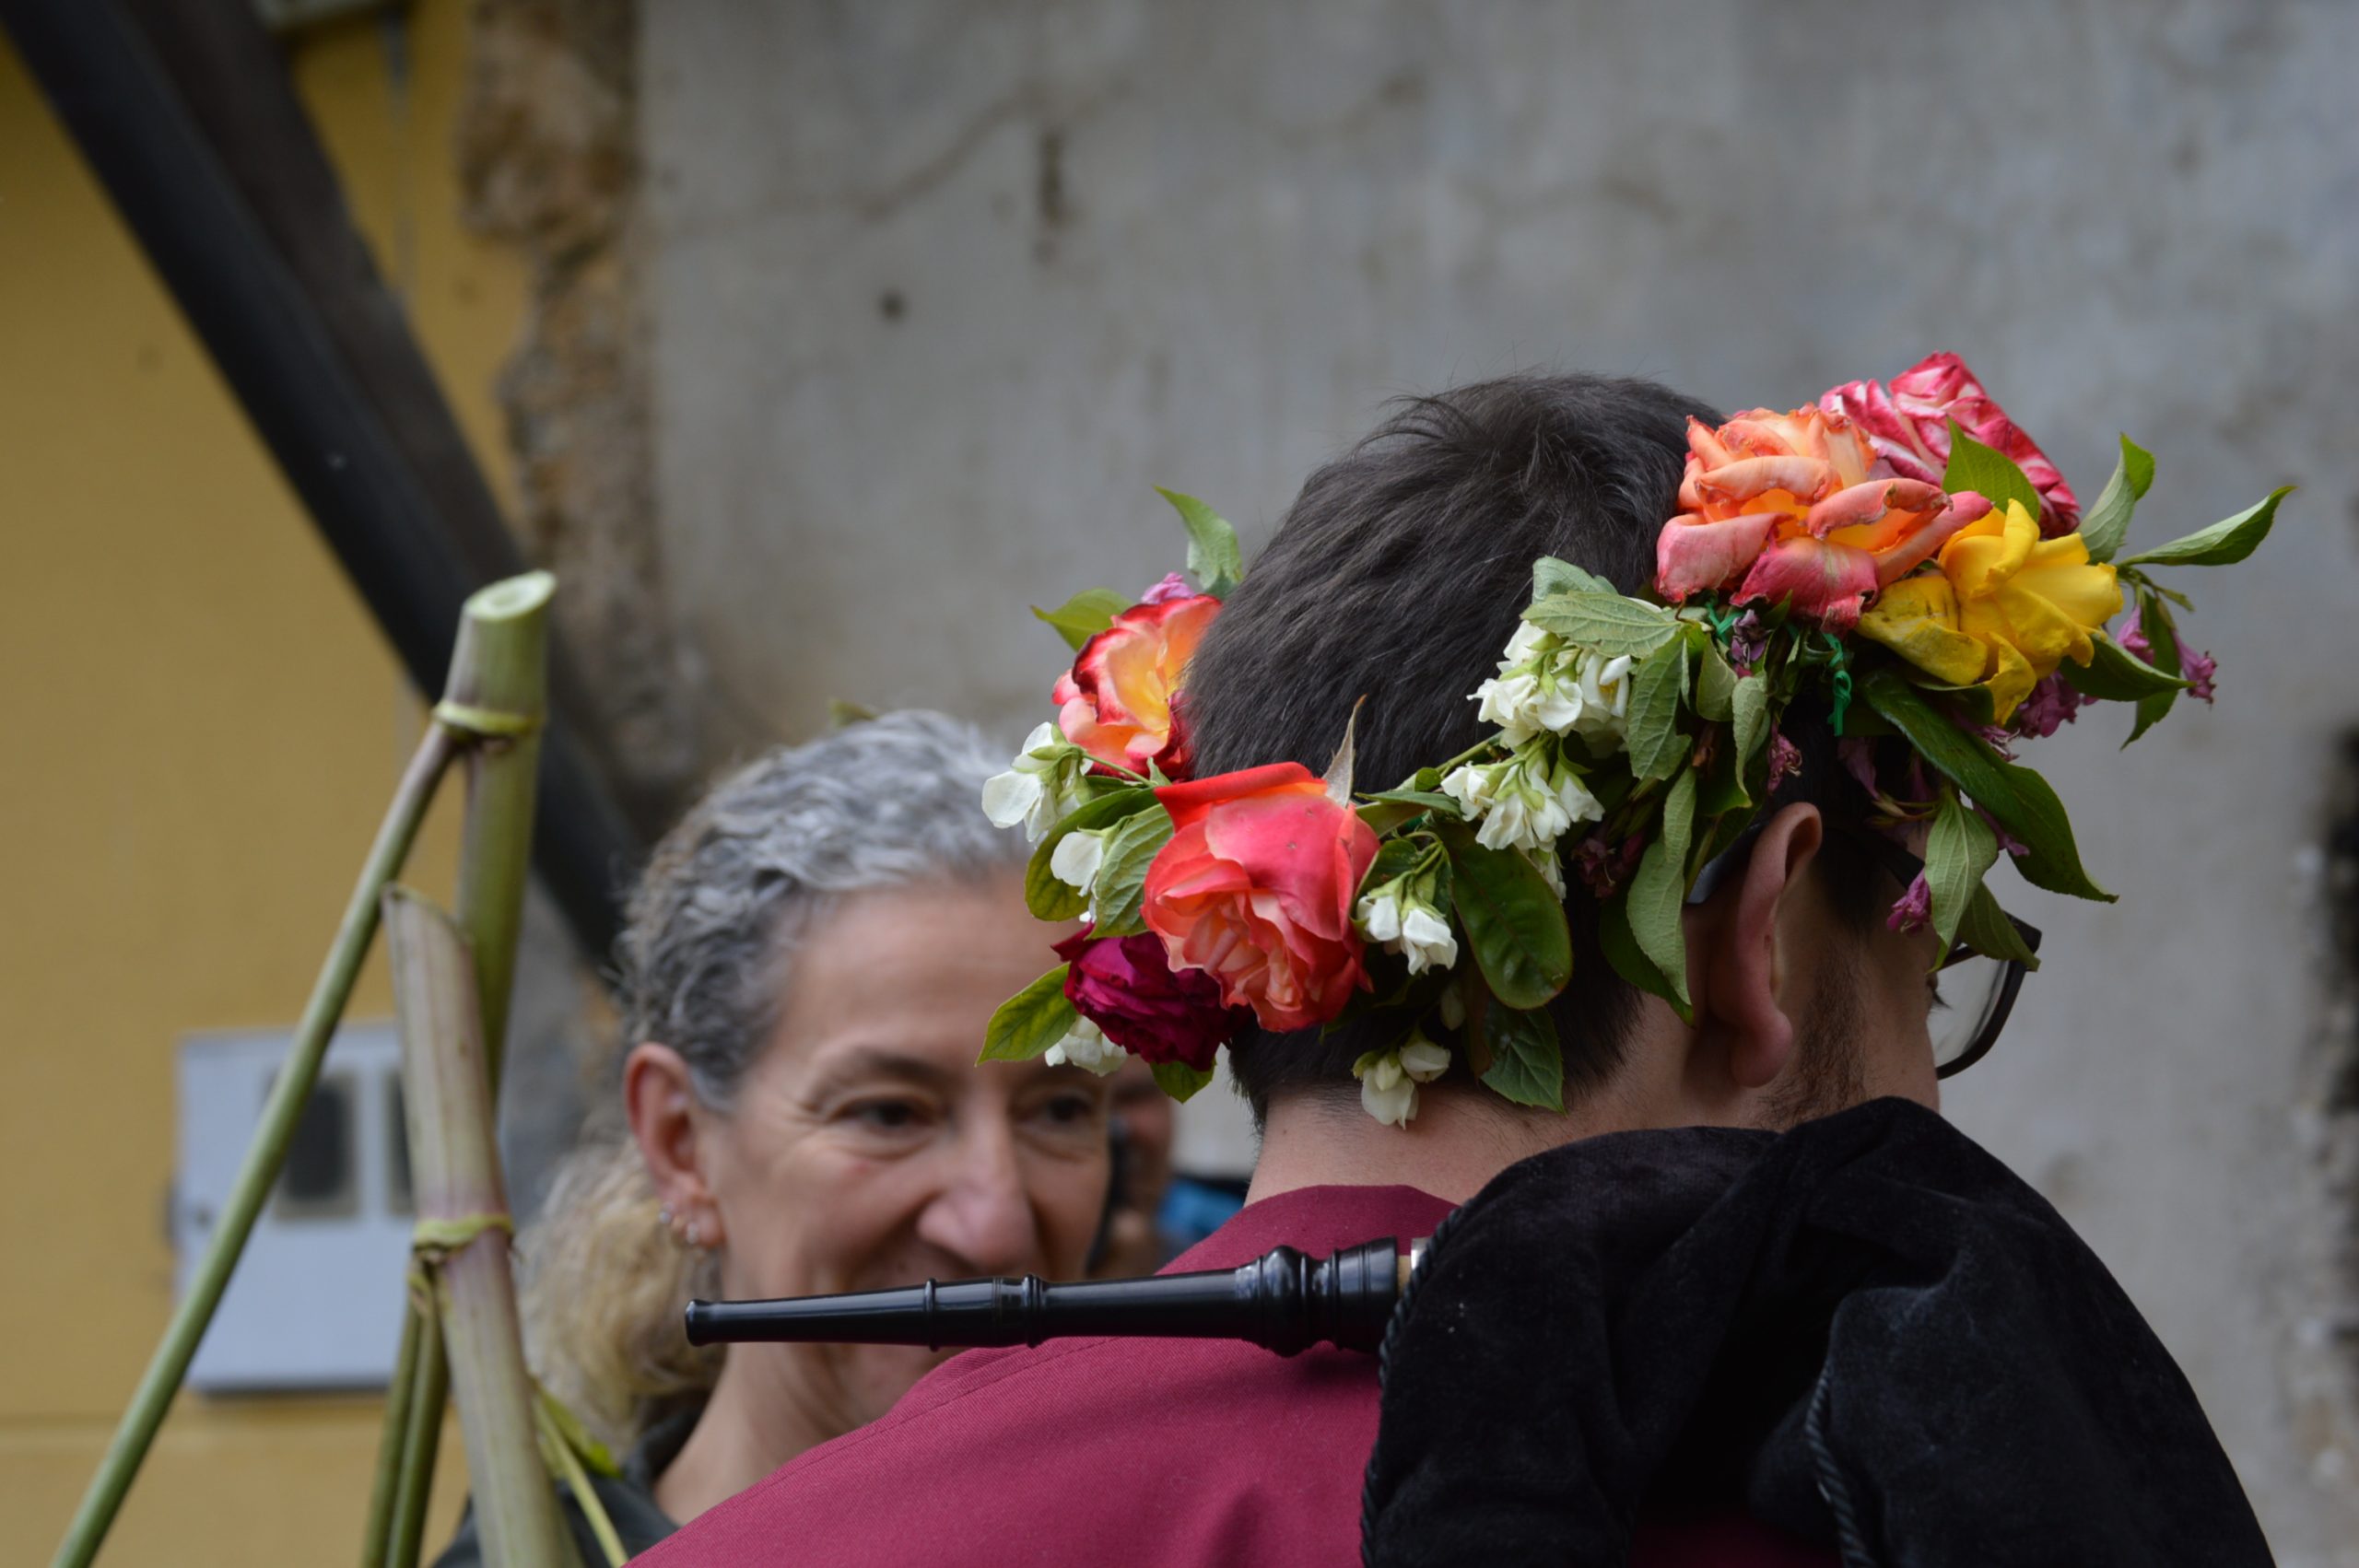 fotogalería| Los Maios de Villafranca; Cañaveira, cuerda pita, flores y ganas de celebrar el cambio de estación 21